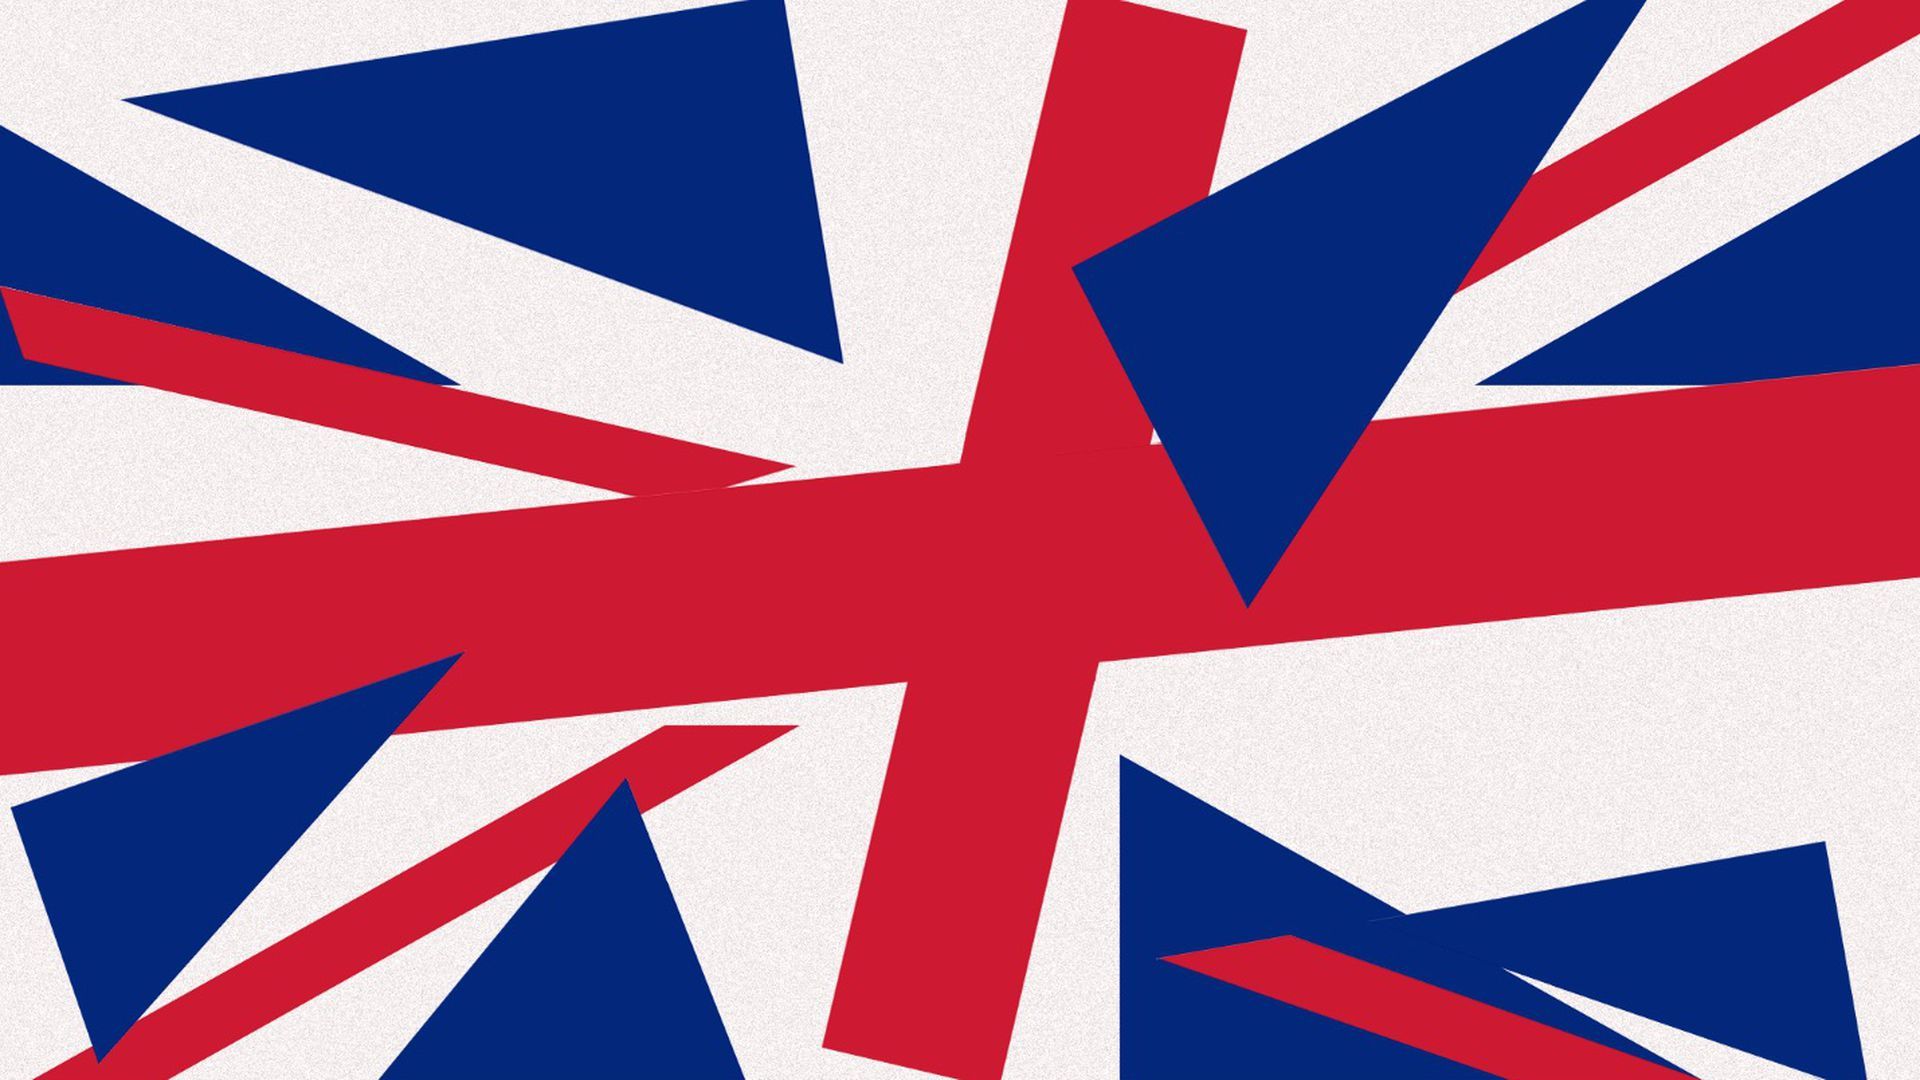 Broken up United Kingdom flag